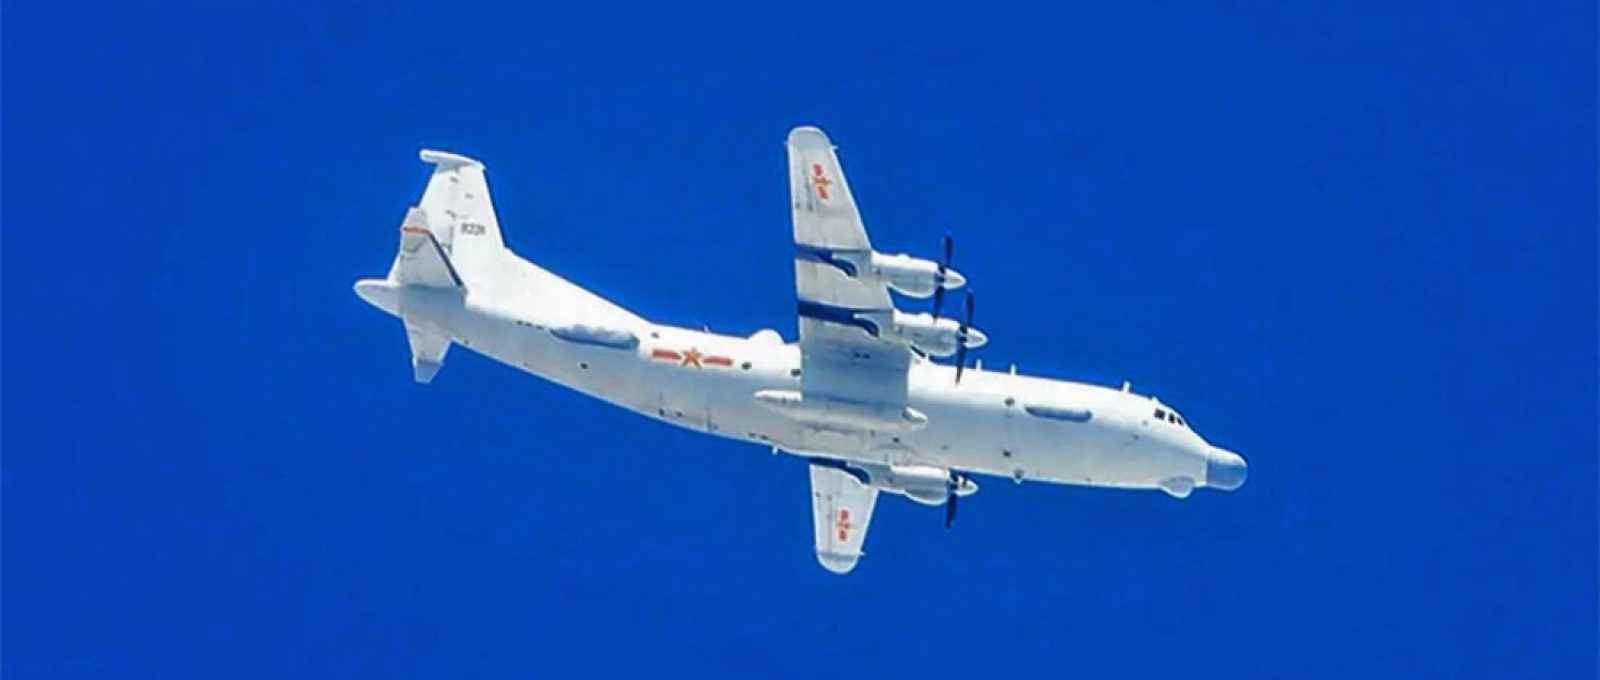 Um avião de reconhecimento tático do PLA entrou na zona de identificação de defesa aérea da ilha na segunda-feira (Foto: SCMP).